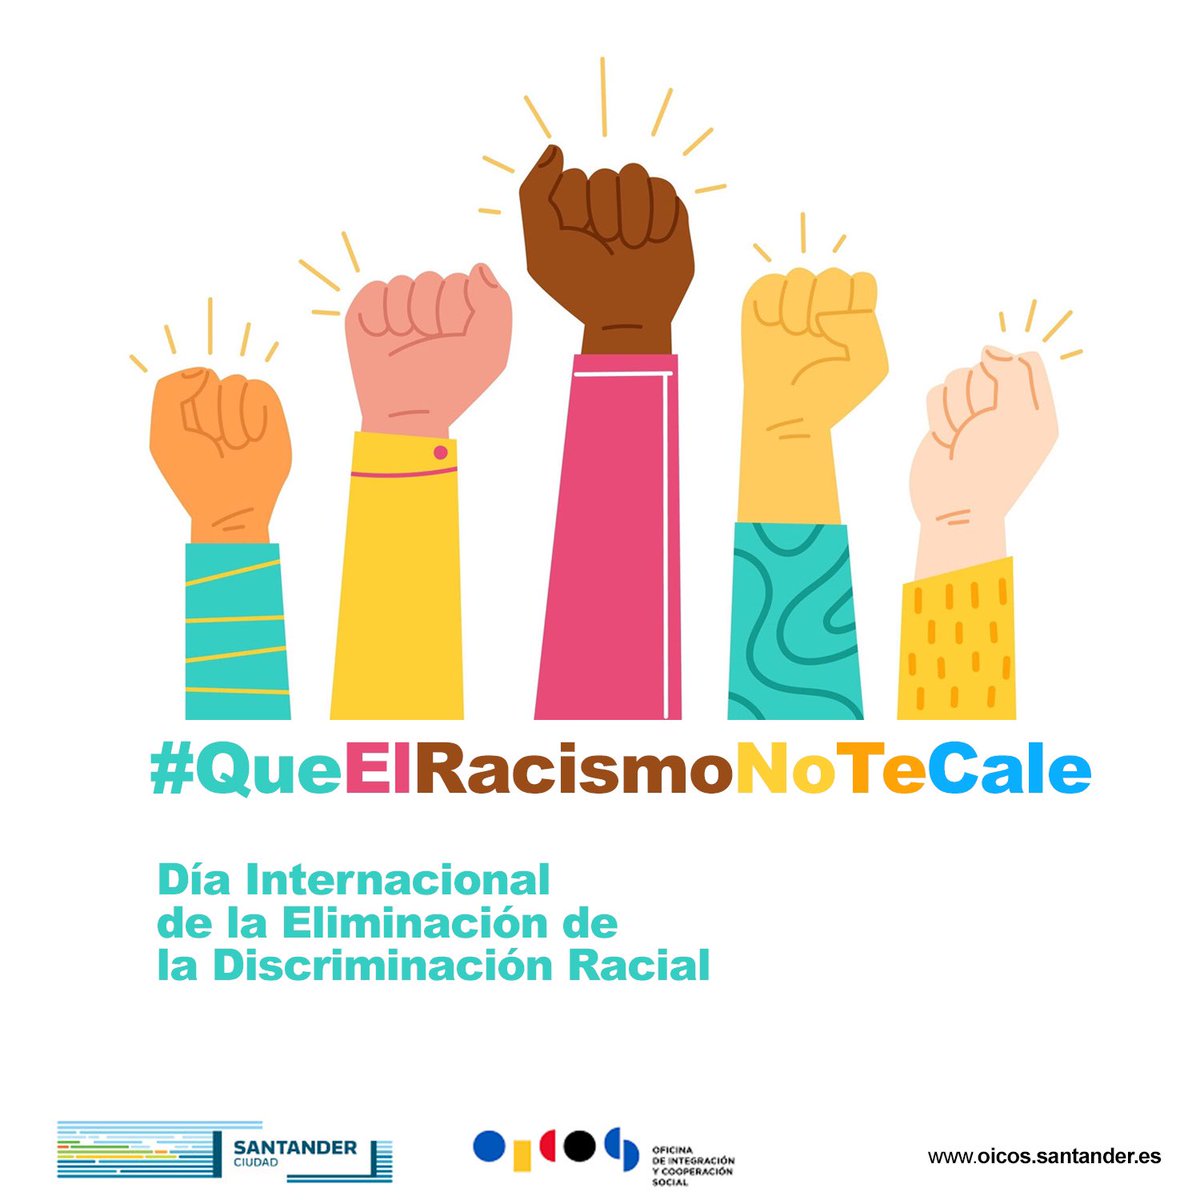 Hoy, 21 de marzo, es el Día Internacional de la Eliminación de la Discriminación Racial, más que nunca #Queelracismonotecale  

Oicos · C. Marqués de la Ensenada, s/n, 
#Santander 

__ 
#OicosSantander #NoalRacismo #Igualdad #diadelaeliminaciondeladiscriminacionracial #cantabria